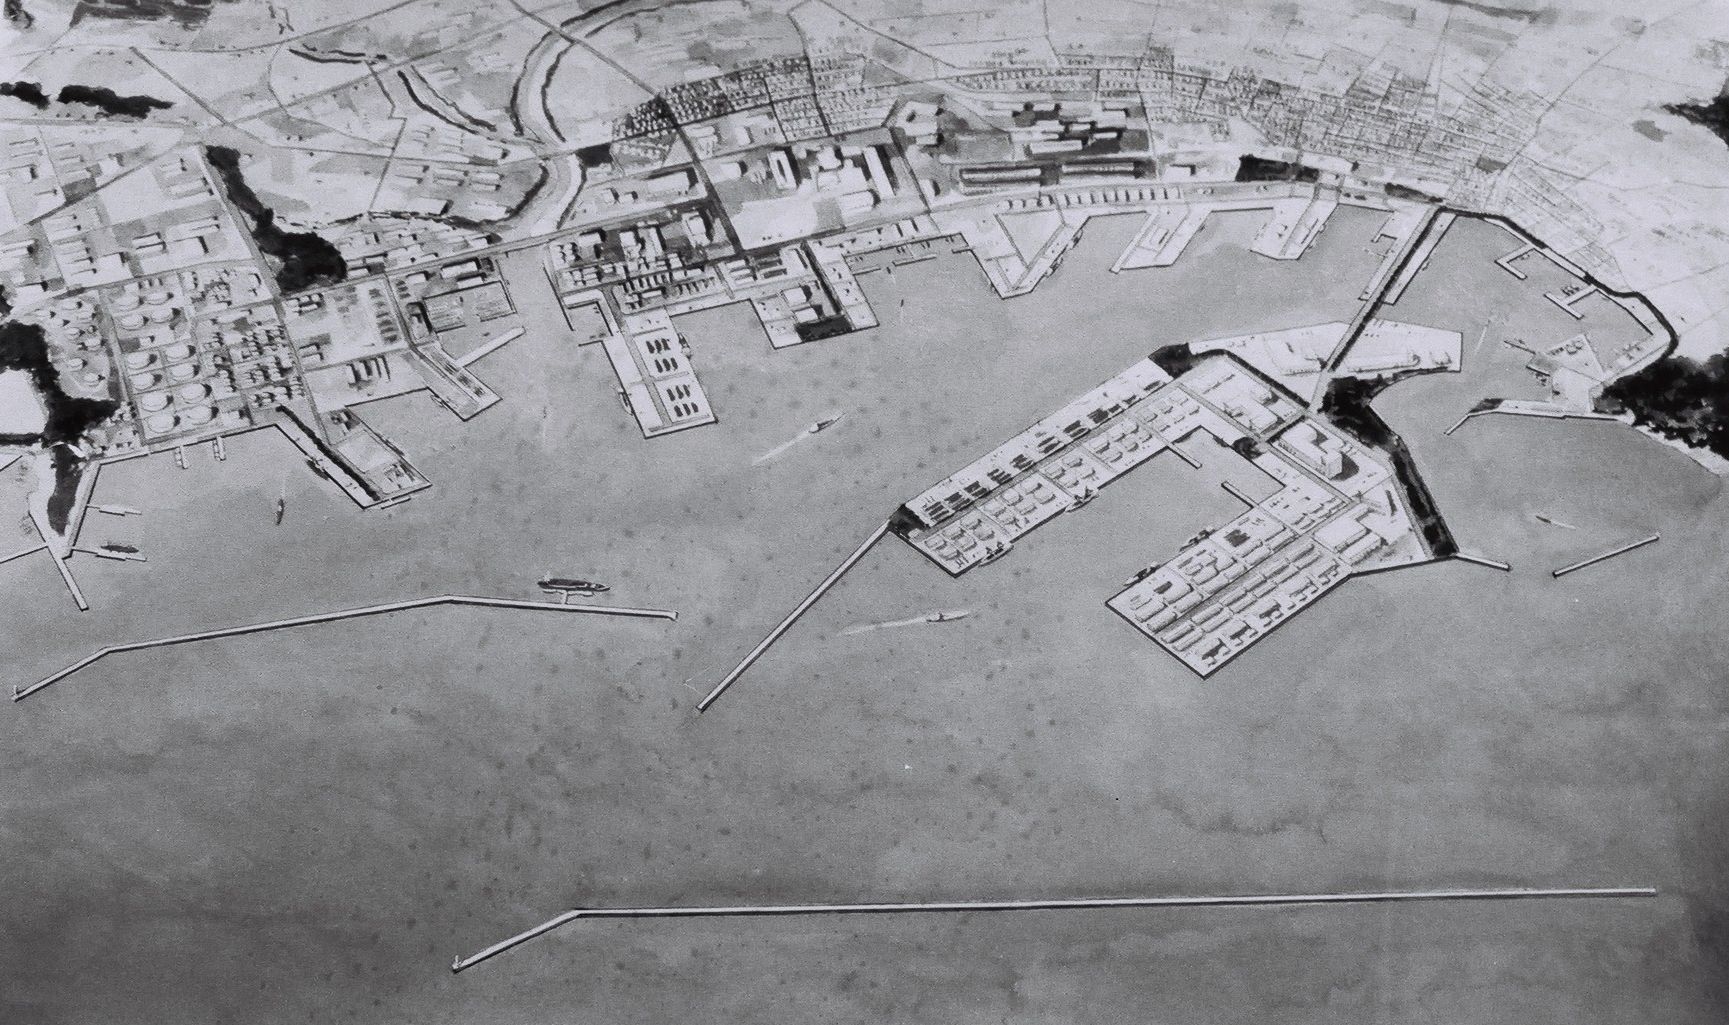 ■8・小名浜図3-2  小名浜港の将来像　人工港は1号埠頭から渡されることになっていた。　〔昭和58(1963)年　いわき市撮影〕